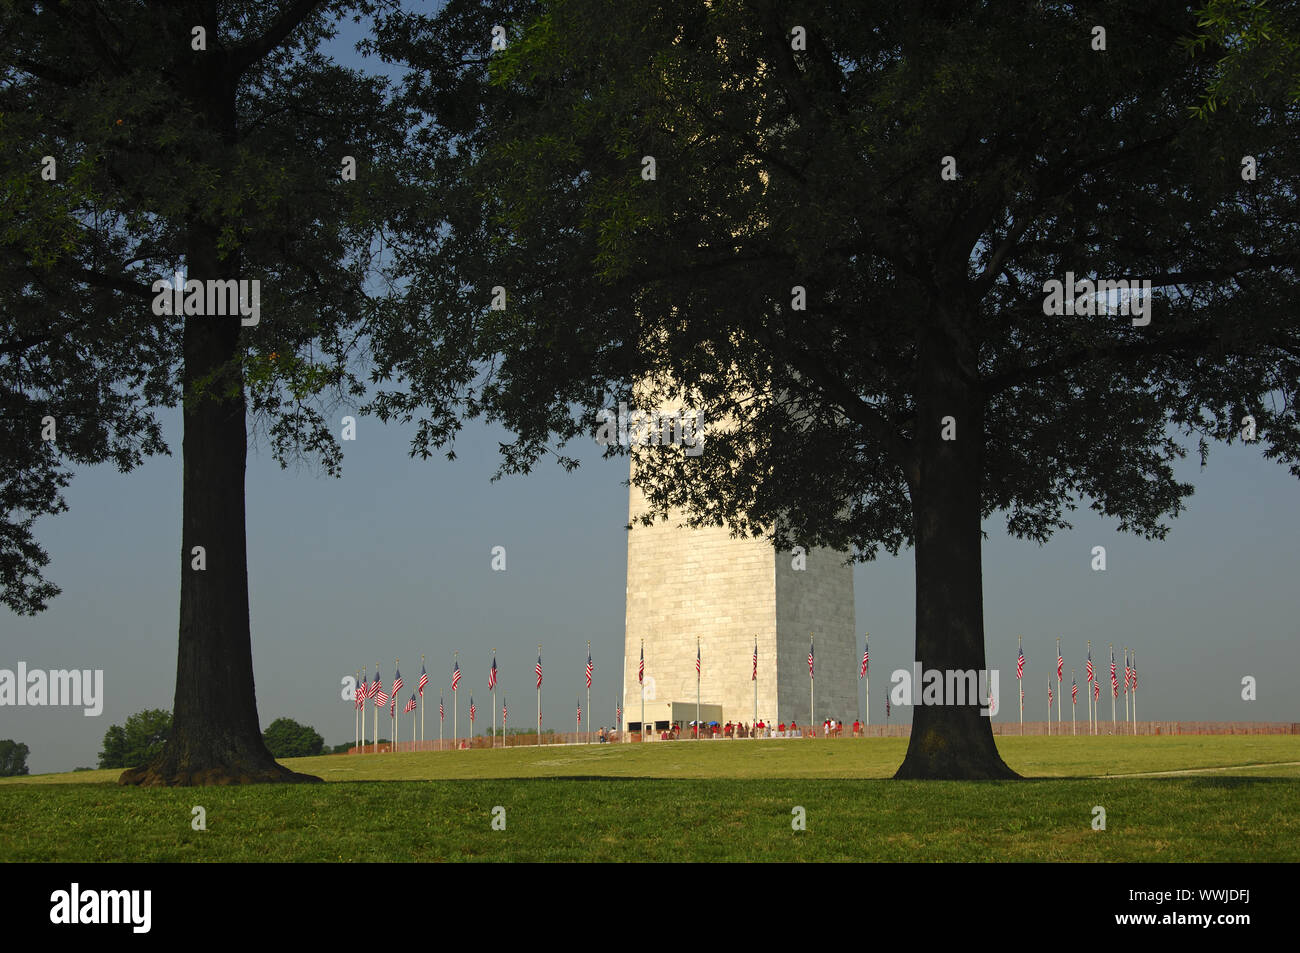 Am Washington Monument, Washington D.C., USA Stock Photo